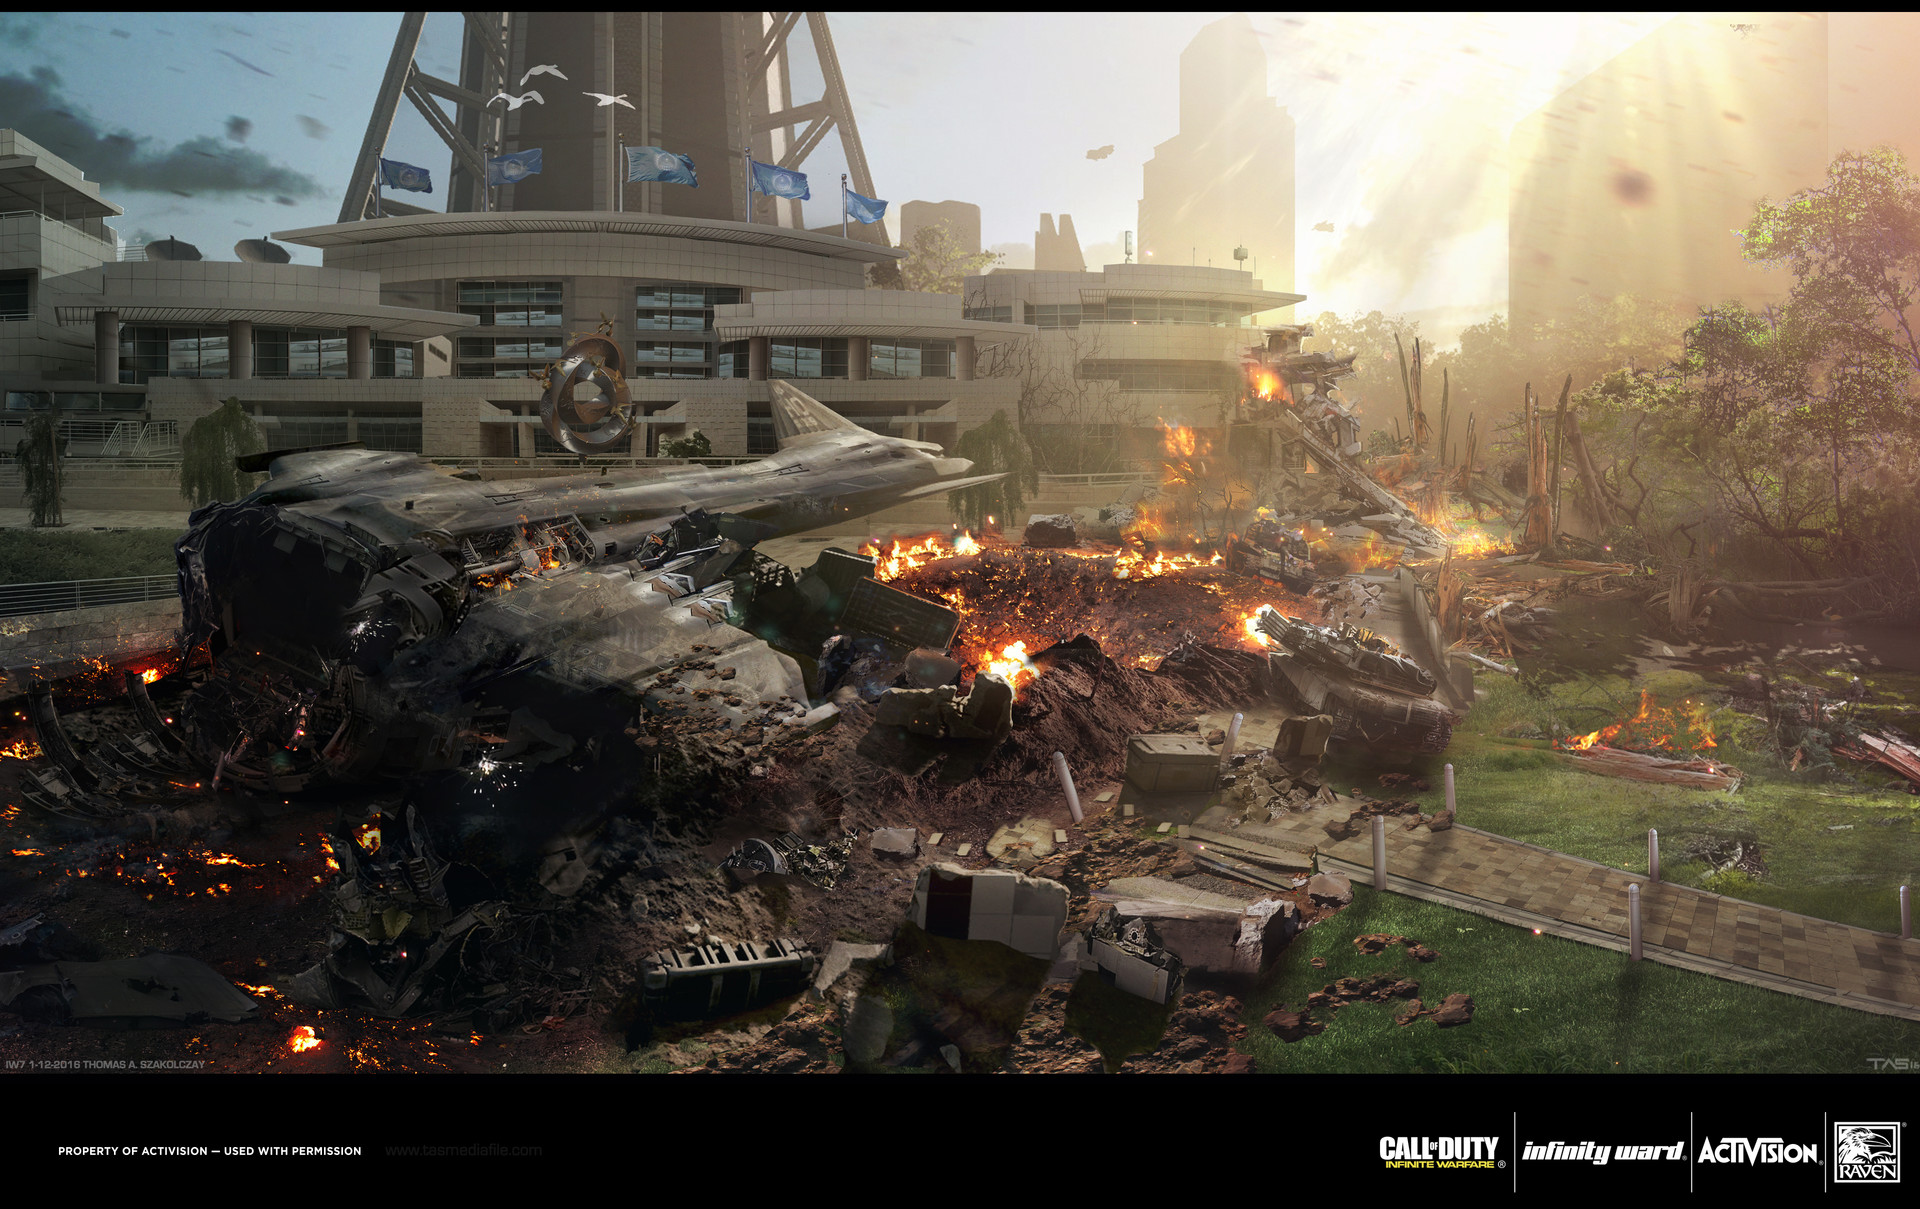 ArtStation - Call of Duty: Infinite Warfare SCAR Pilot 